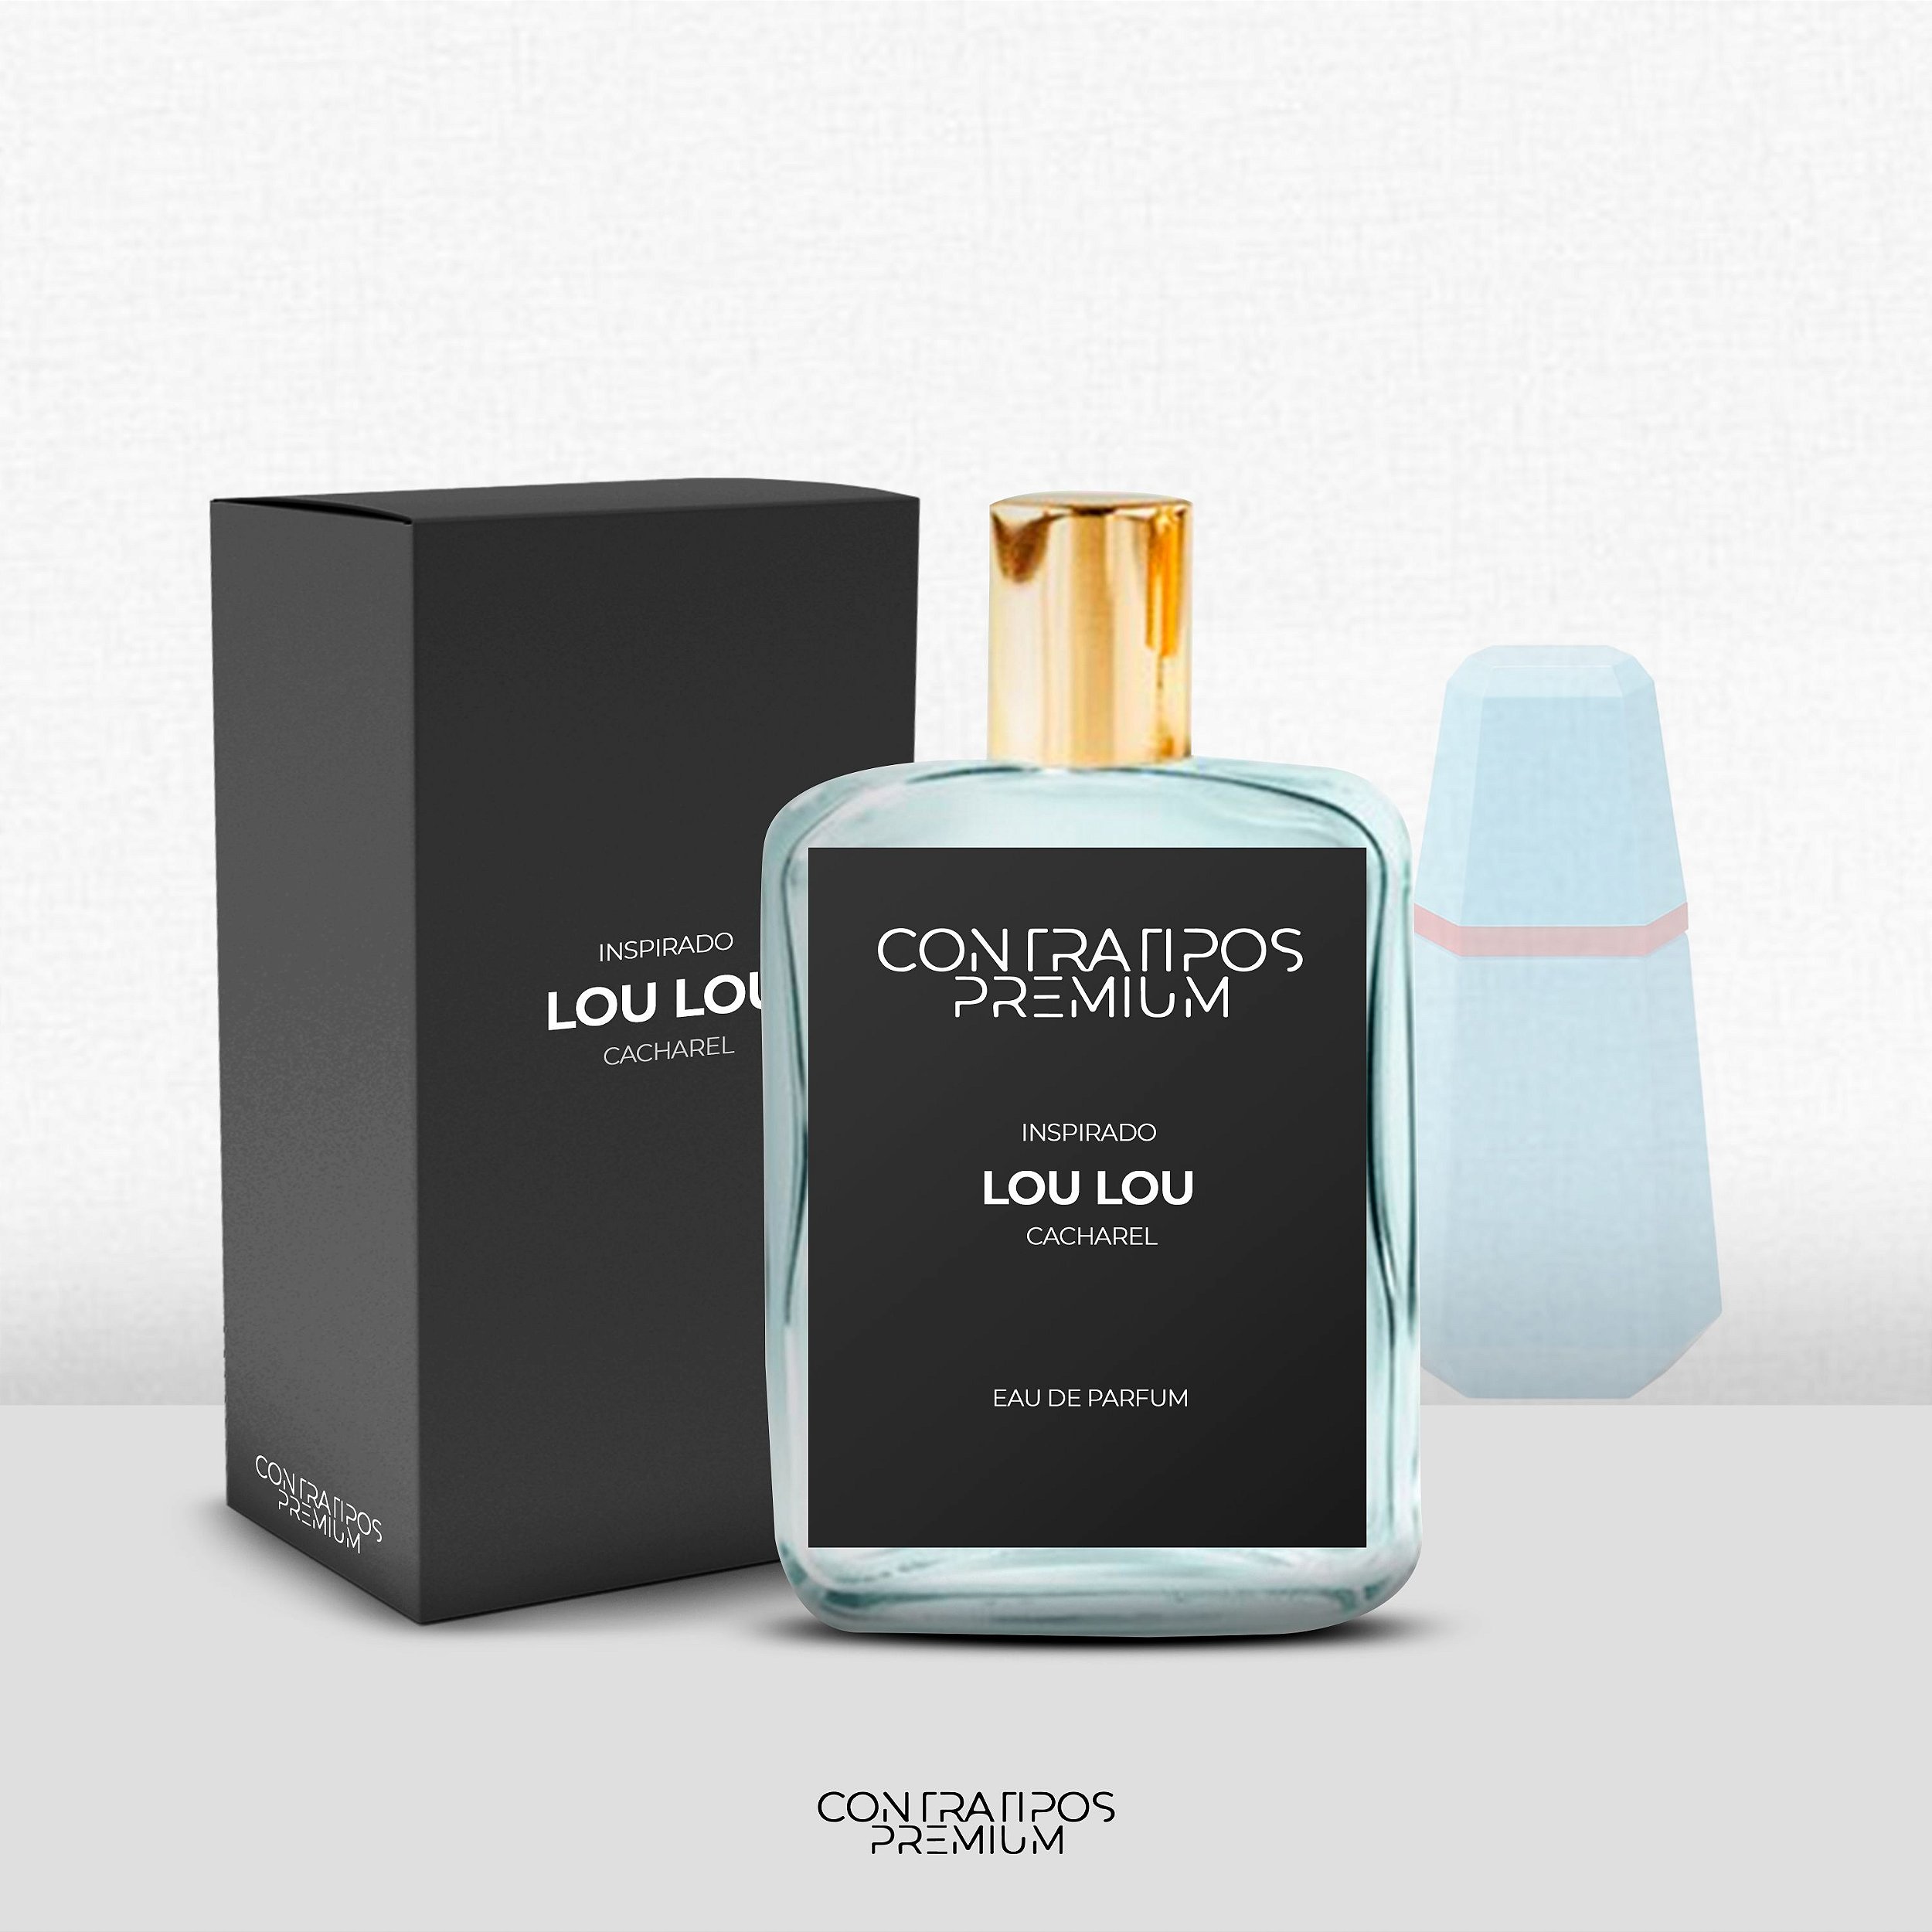 PERFUME CONTRATIPO - INSPIRADO LOU LOU - Loja ContratiposPremium -  Contratipos de perfumes originais - Perfumaria e Essências